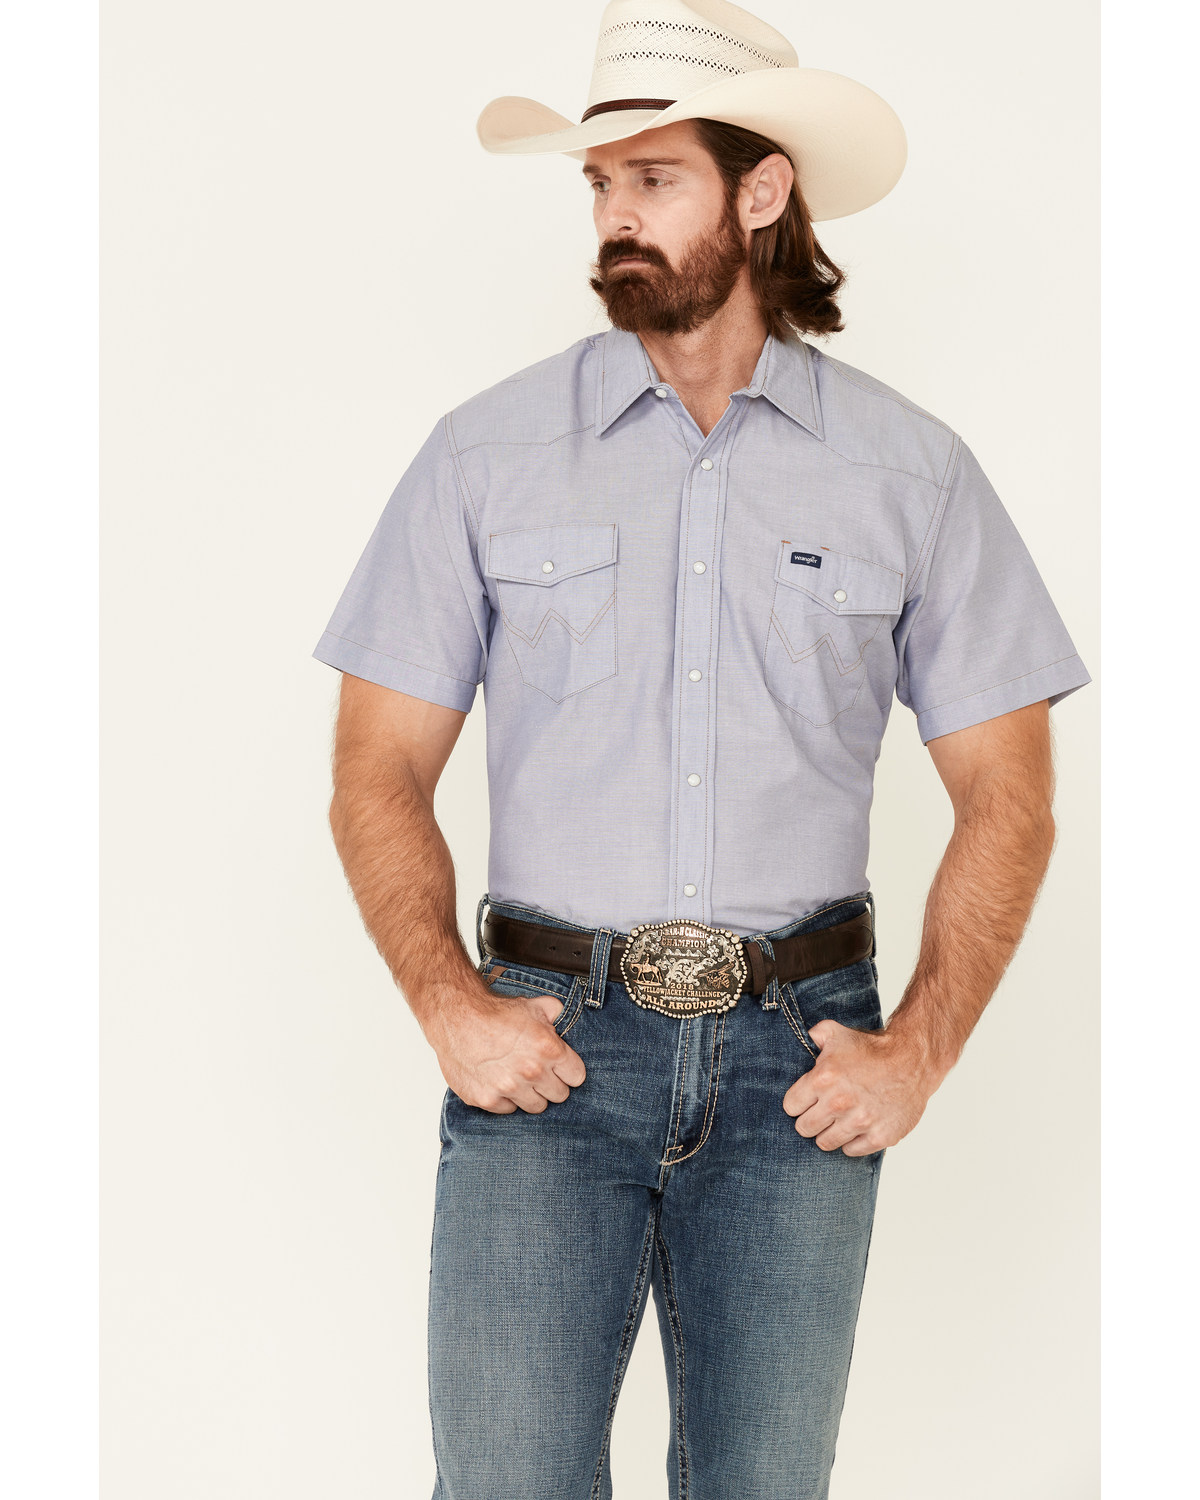 Wrangler Men's Solid Chambray Short Sleeve Work Shirt